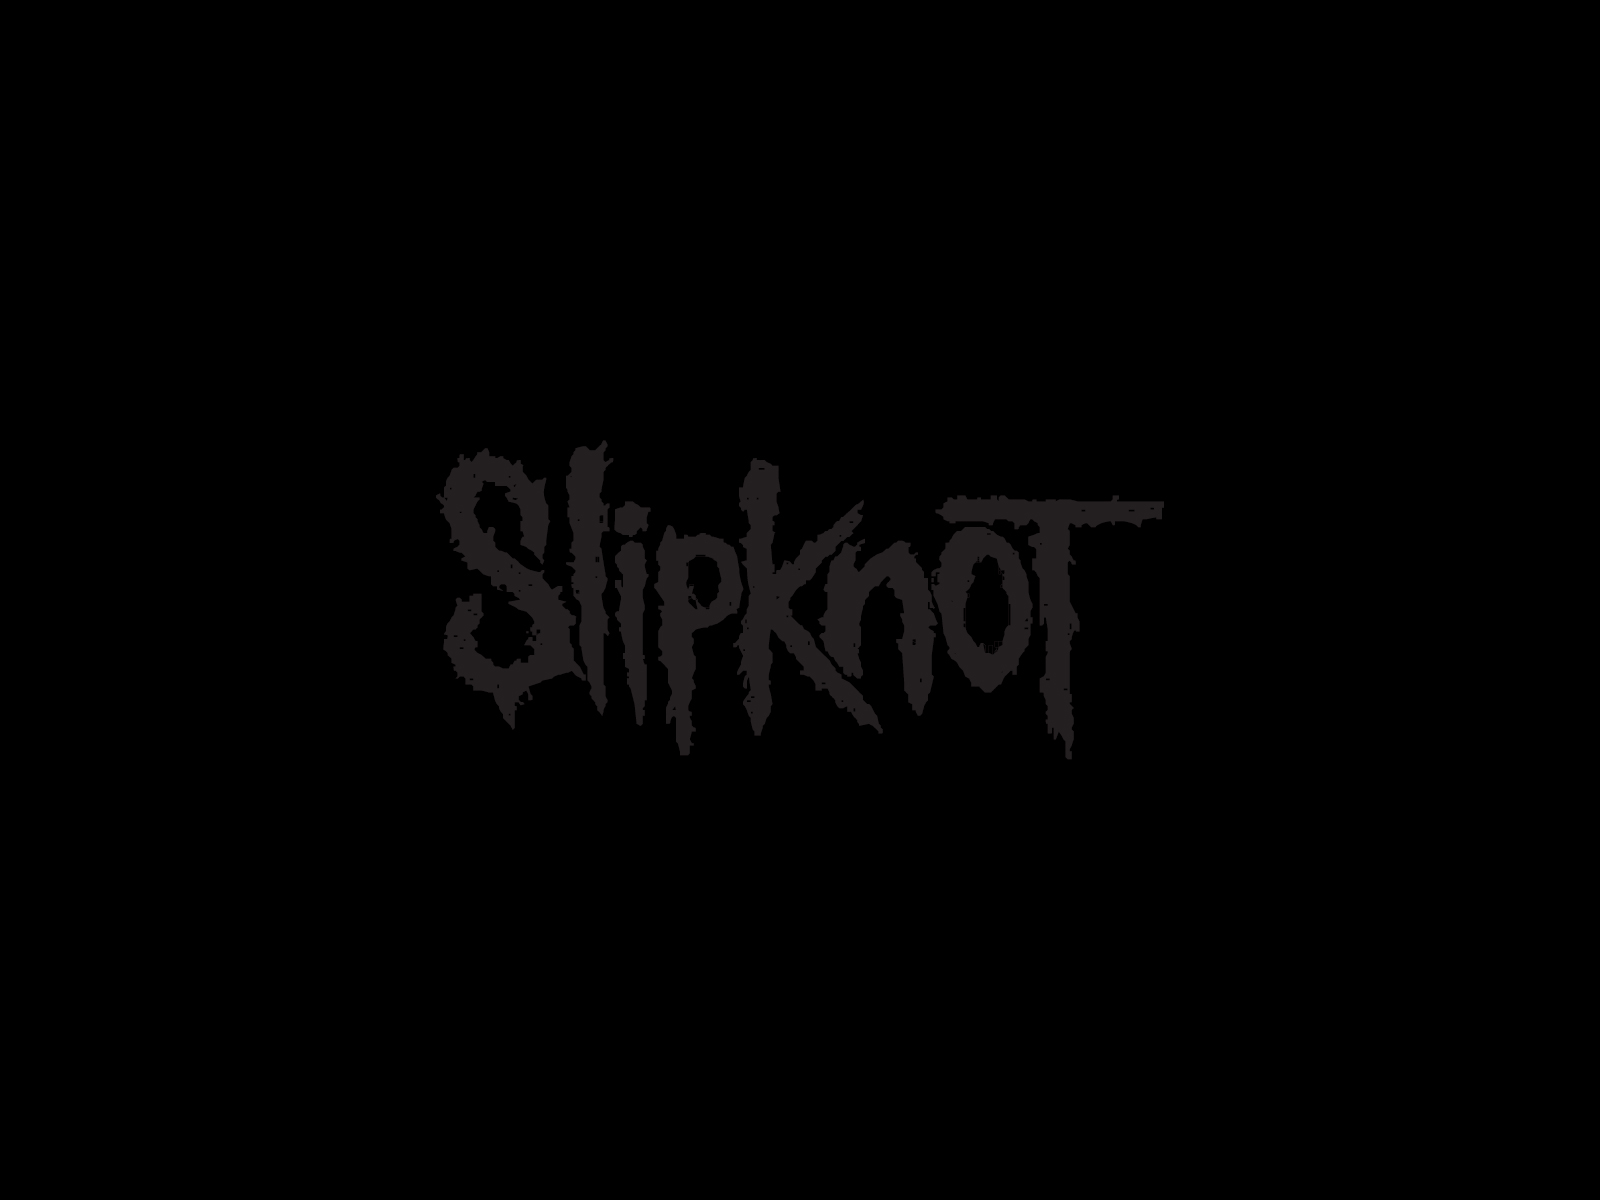 slipknot, nu metal, music, heavy metal, industrial metal